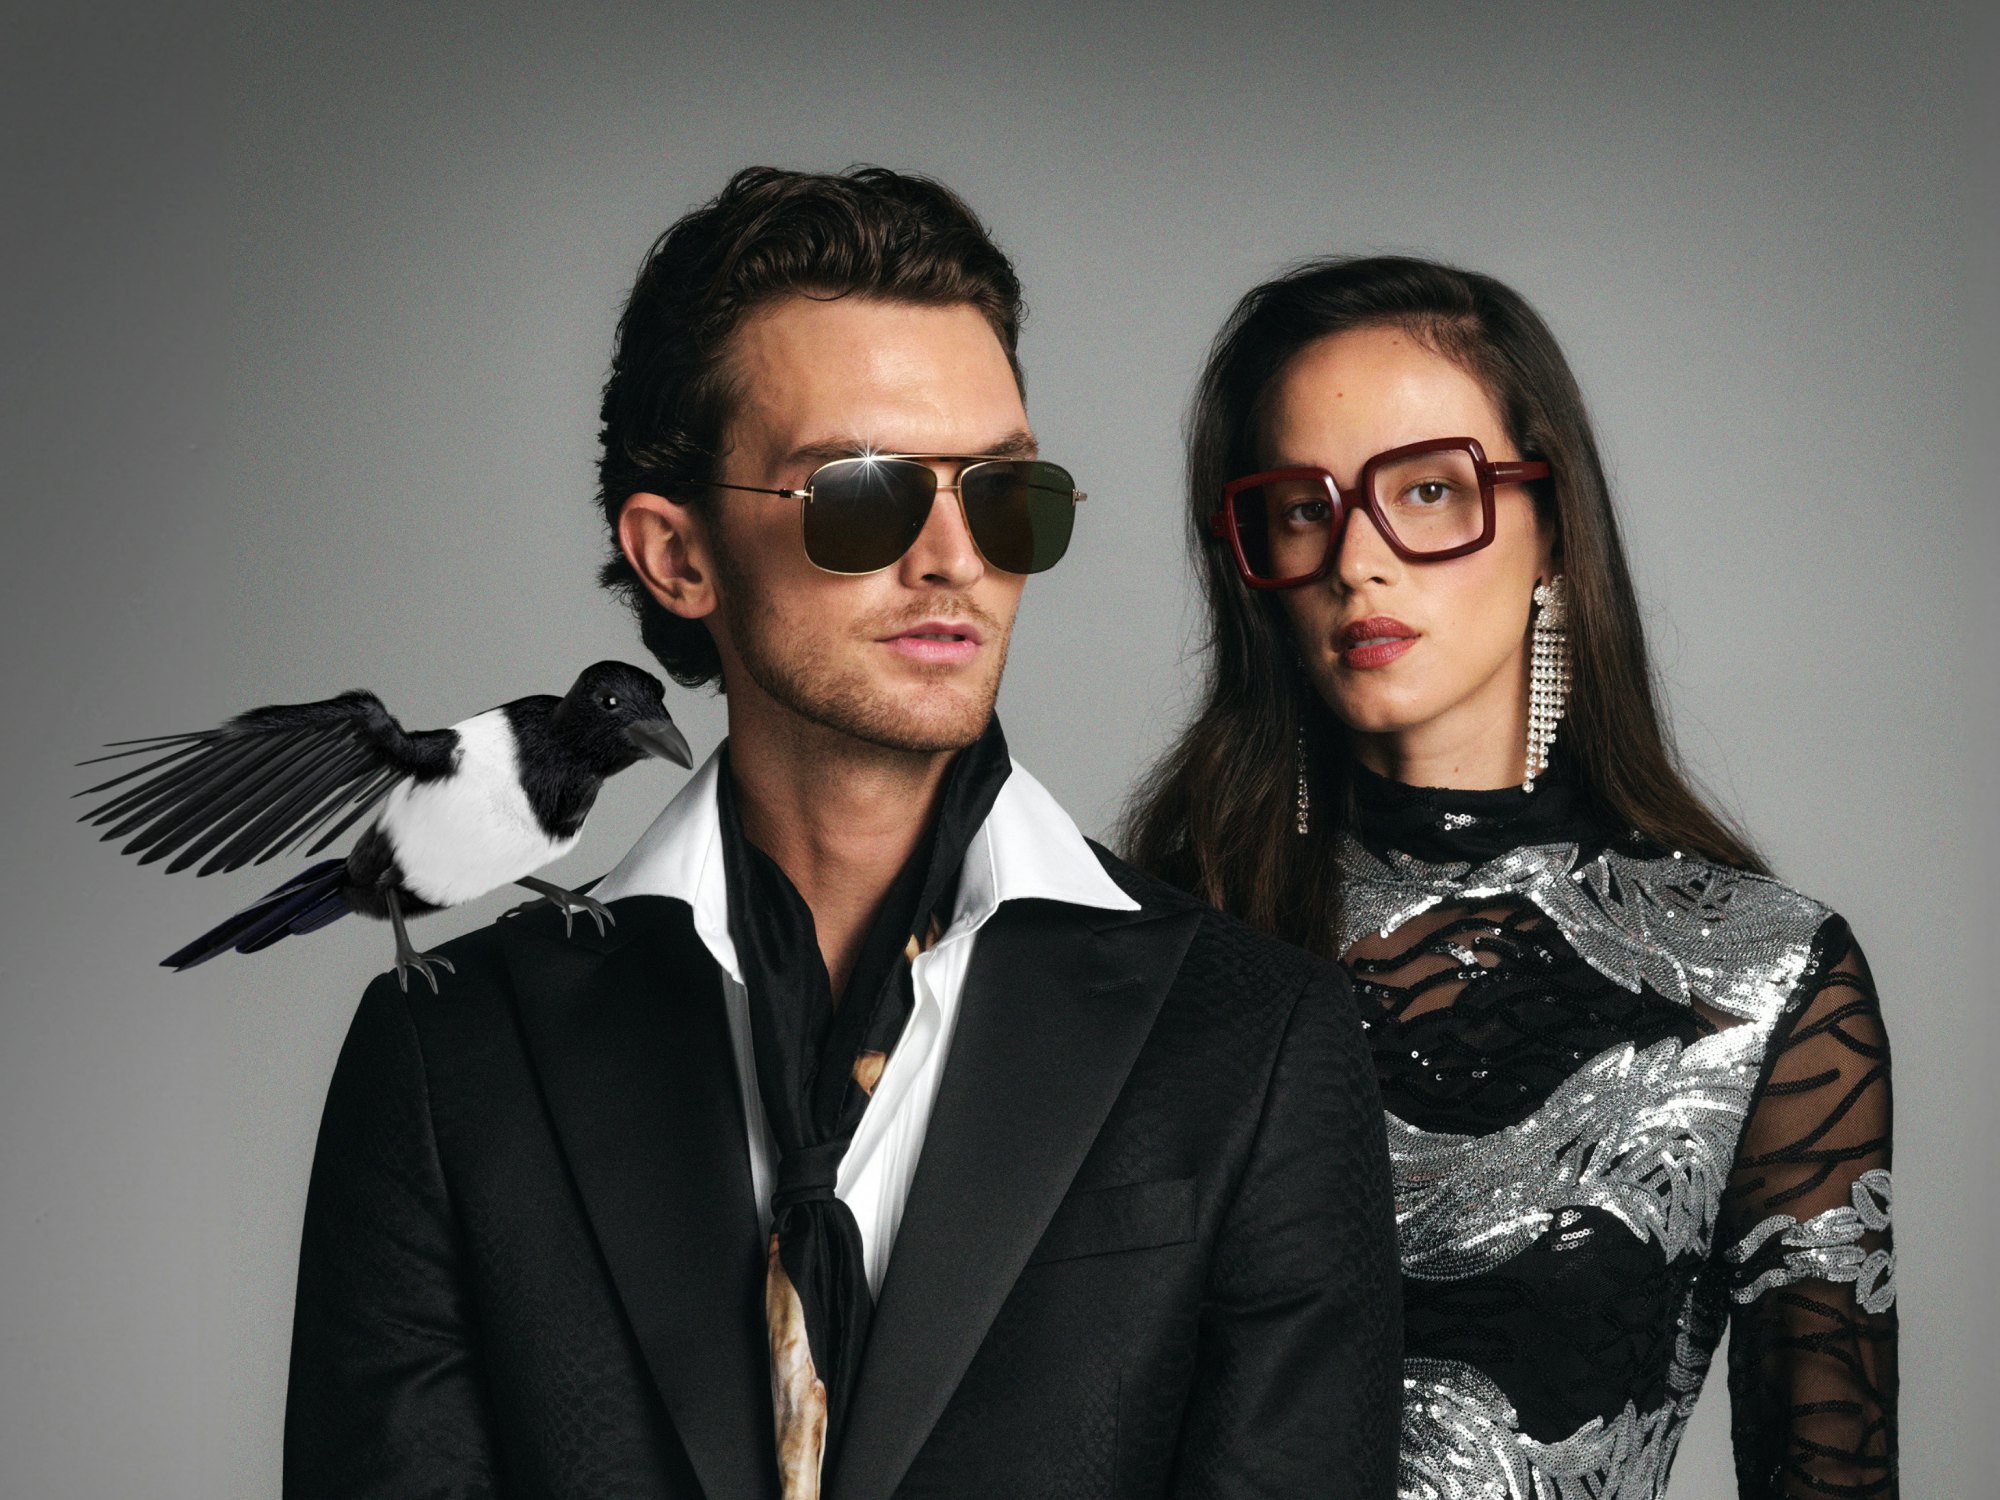 Mann med solbriller og dame med briller, fugl på skulderen til herre